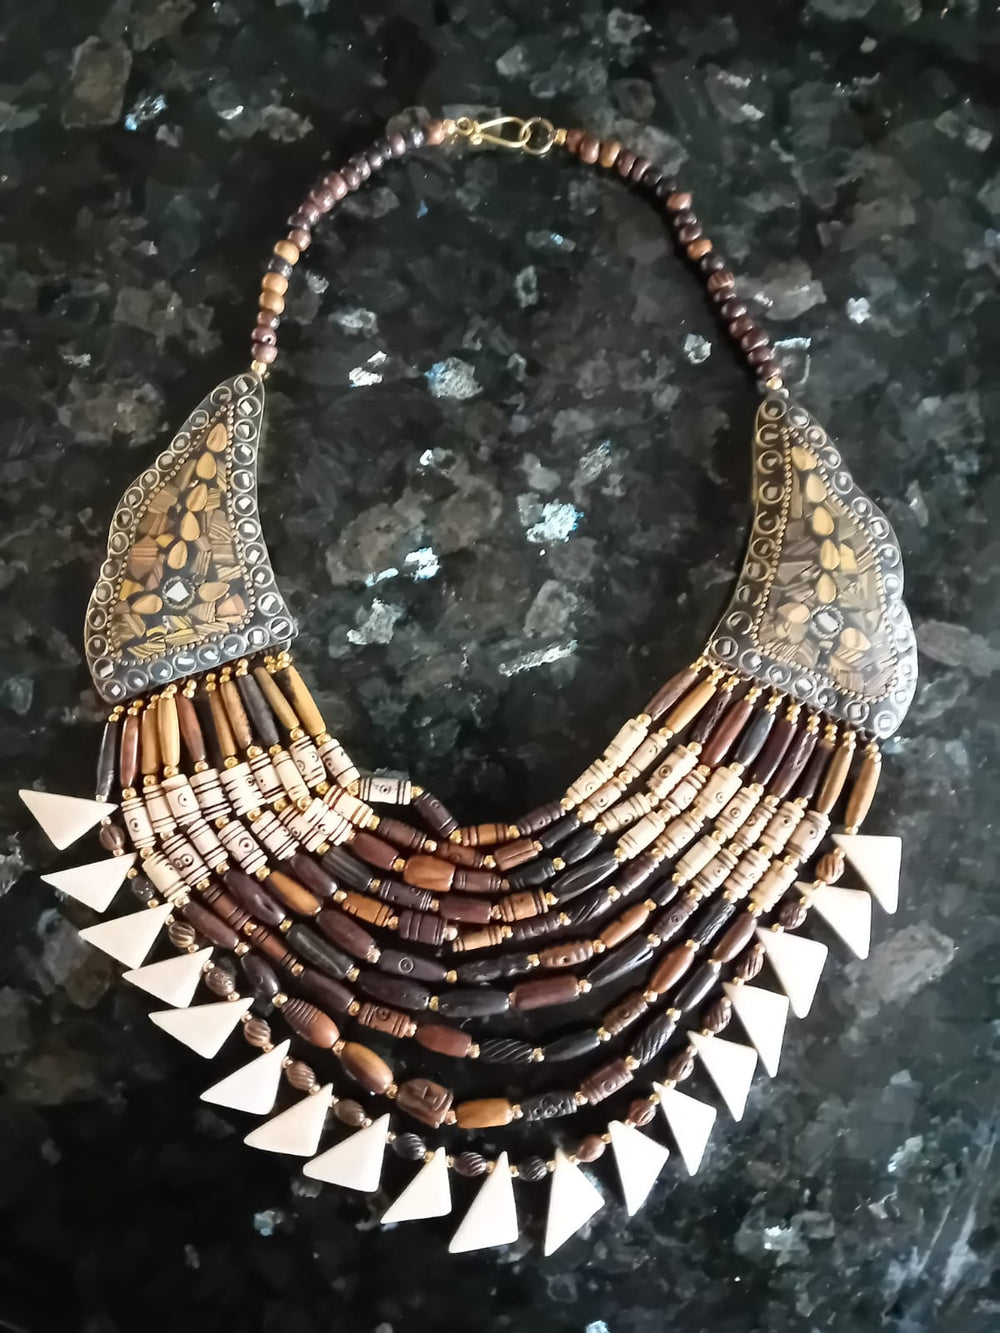 Bohotusk 10 Strand Multi Bead Necklace - Large